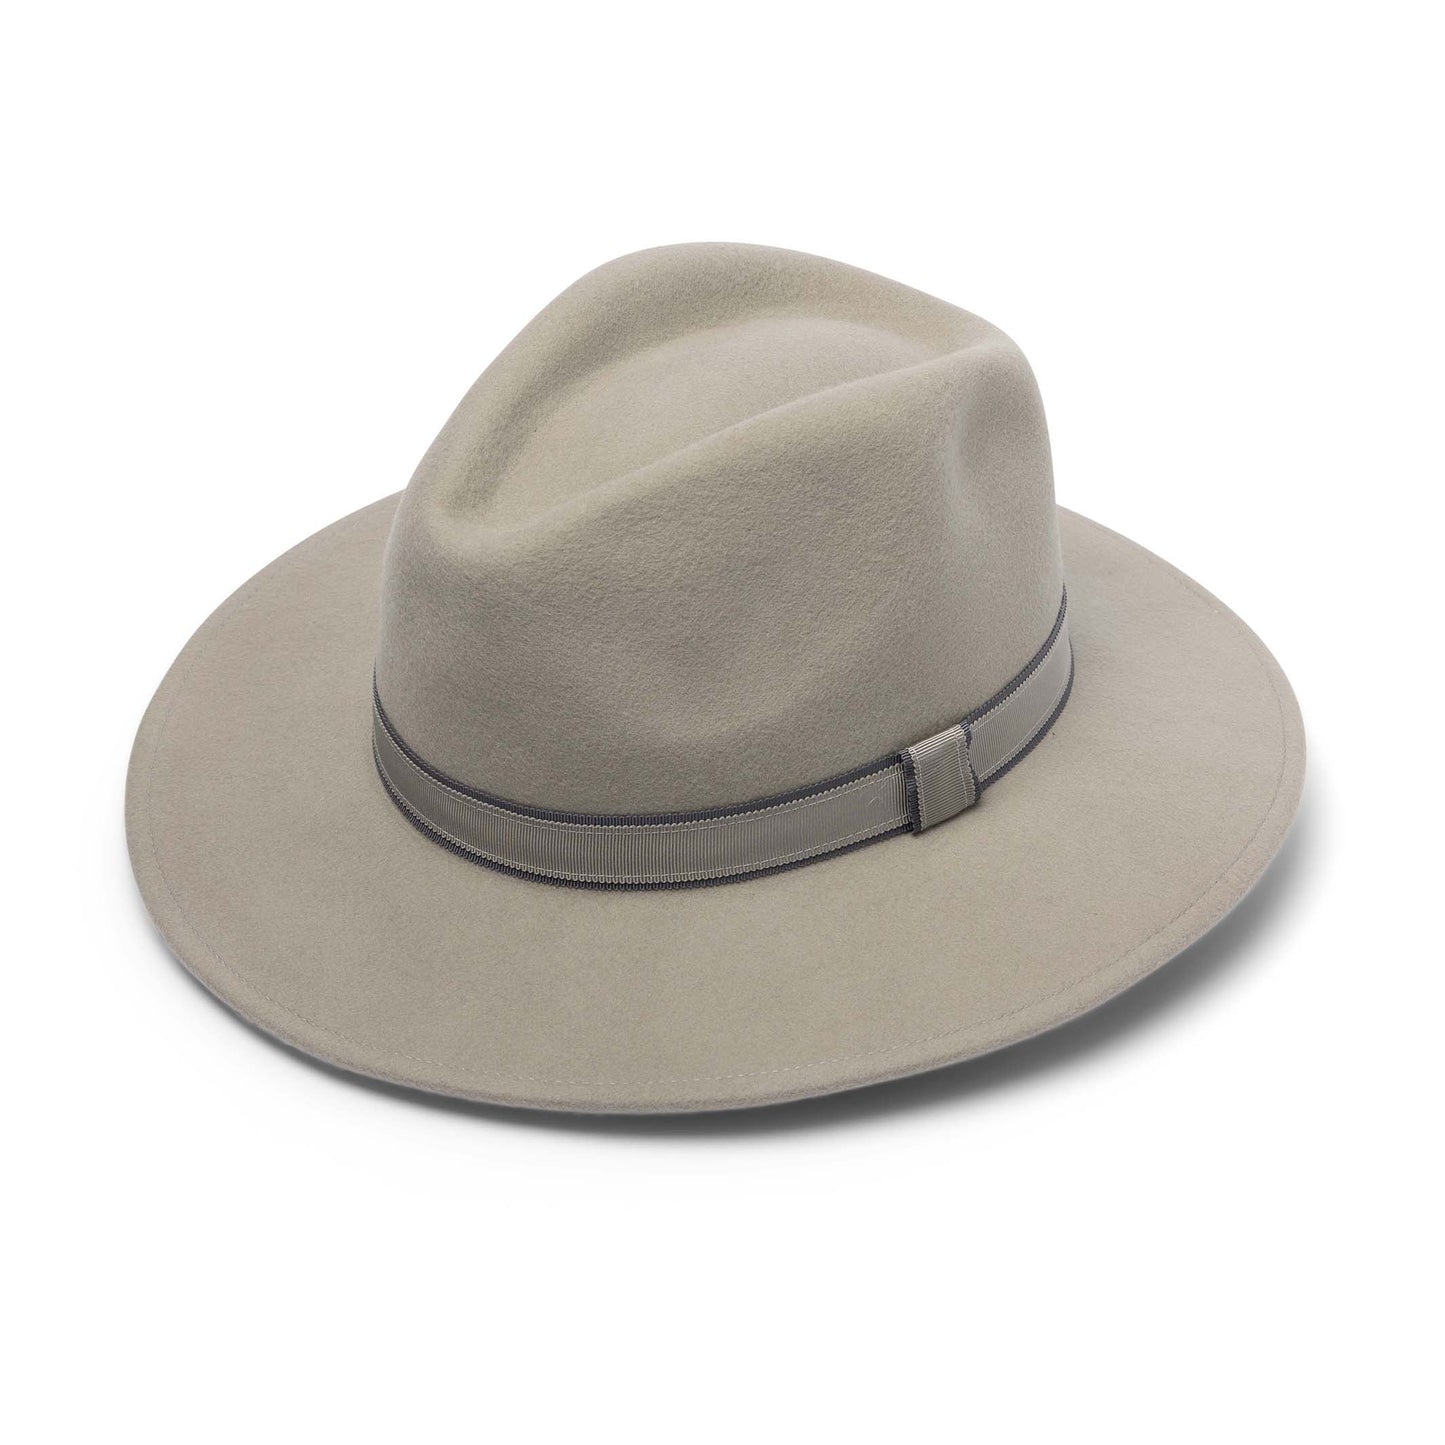 Canopy Bay Croydon Felt Fedora Hat